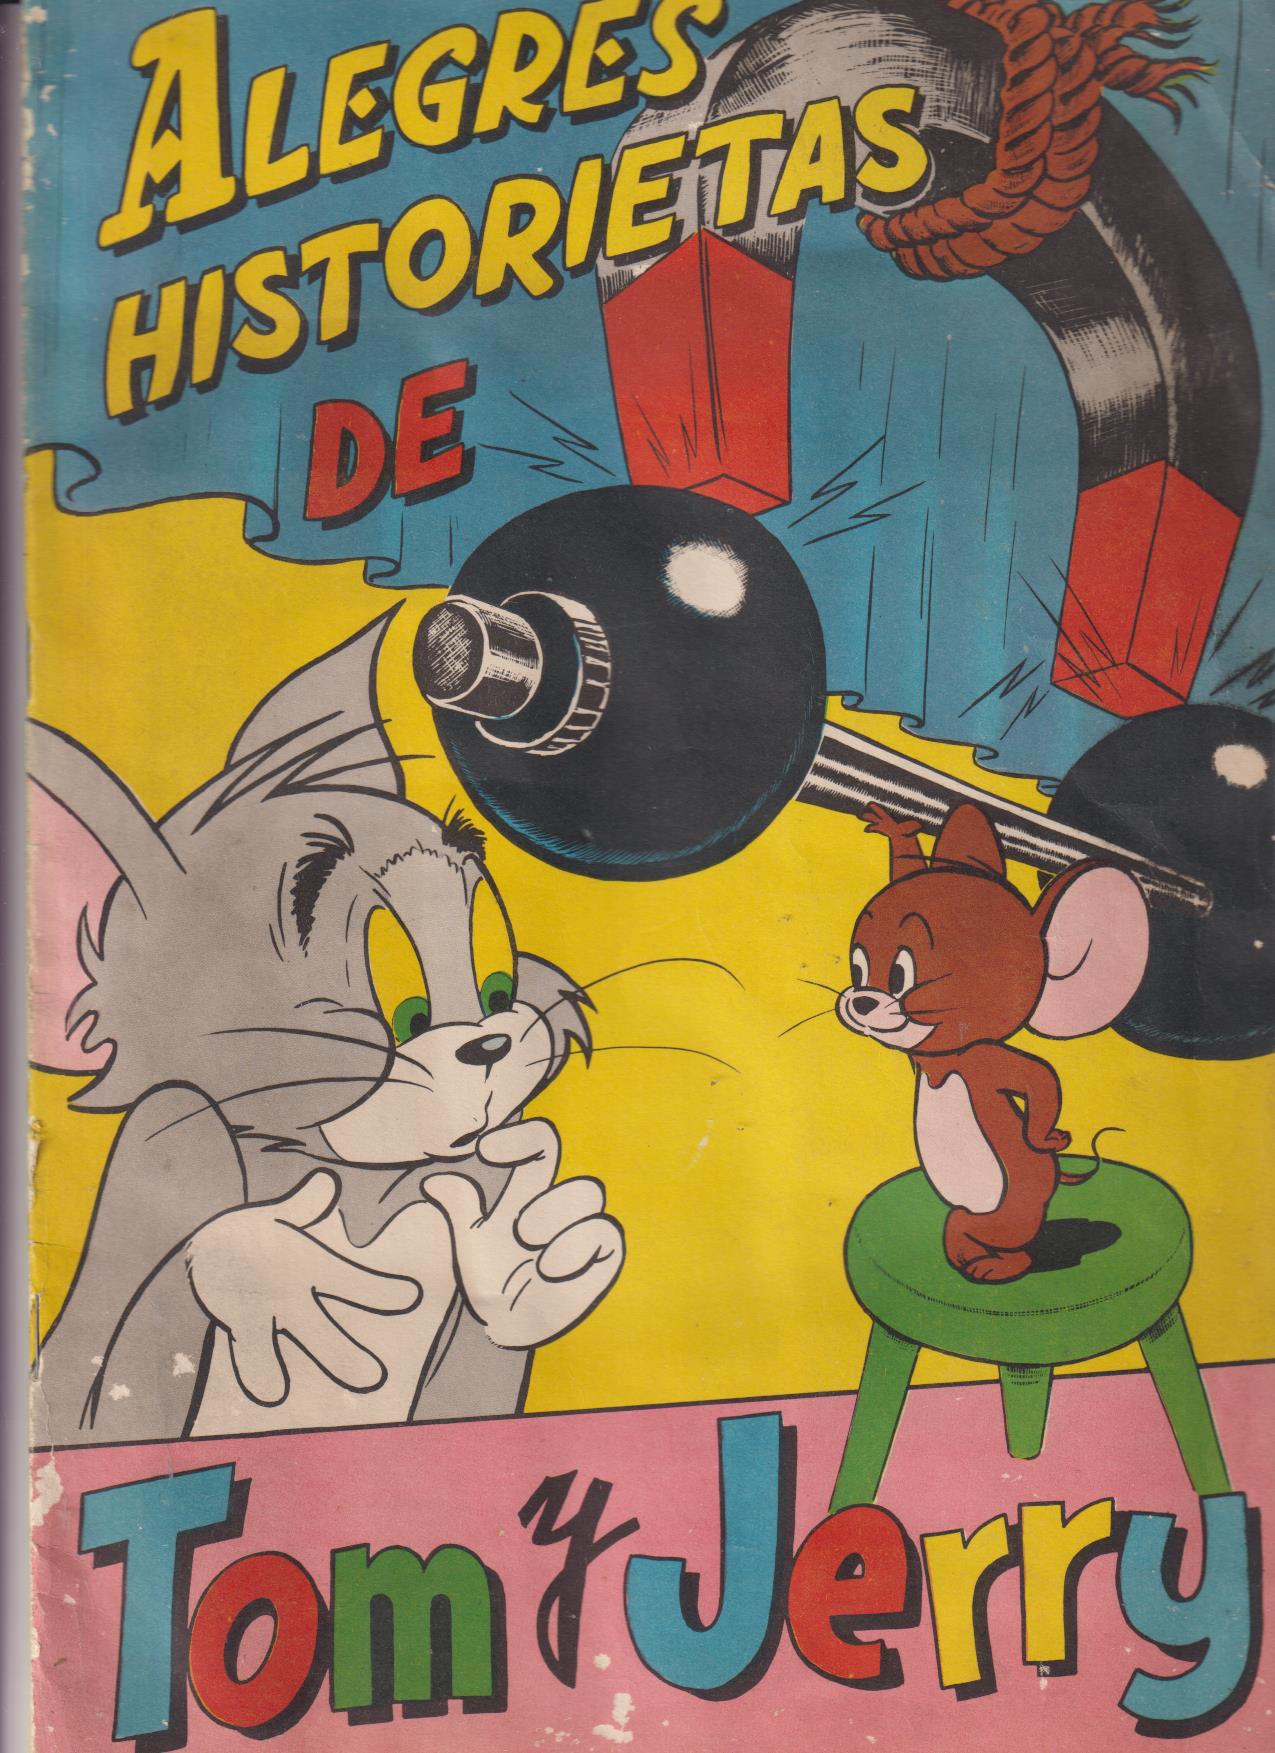 Álbum Alegres Historietas de Tom y Jerry. Fher 195?. Completo 200 cromos